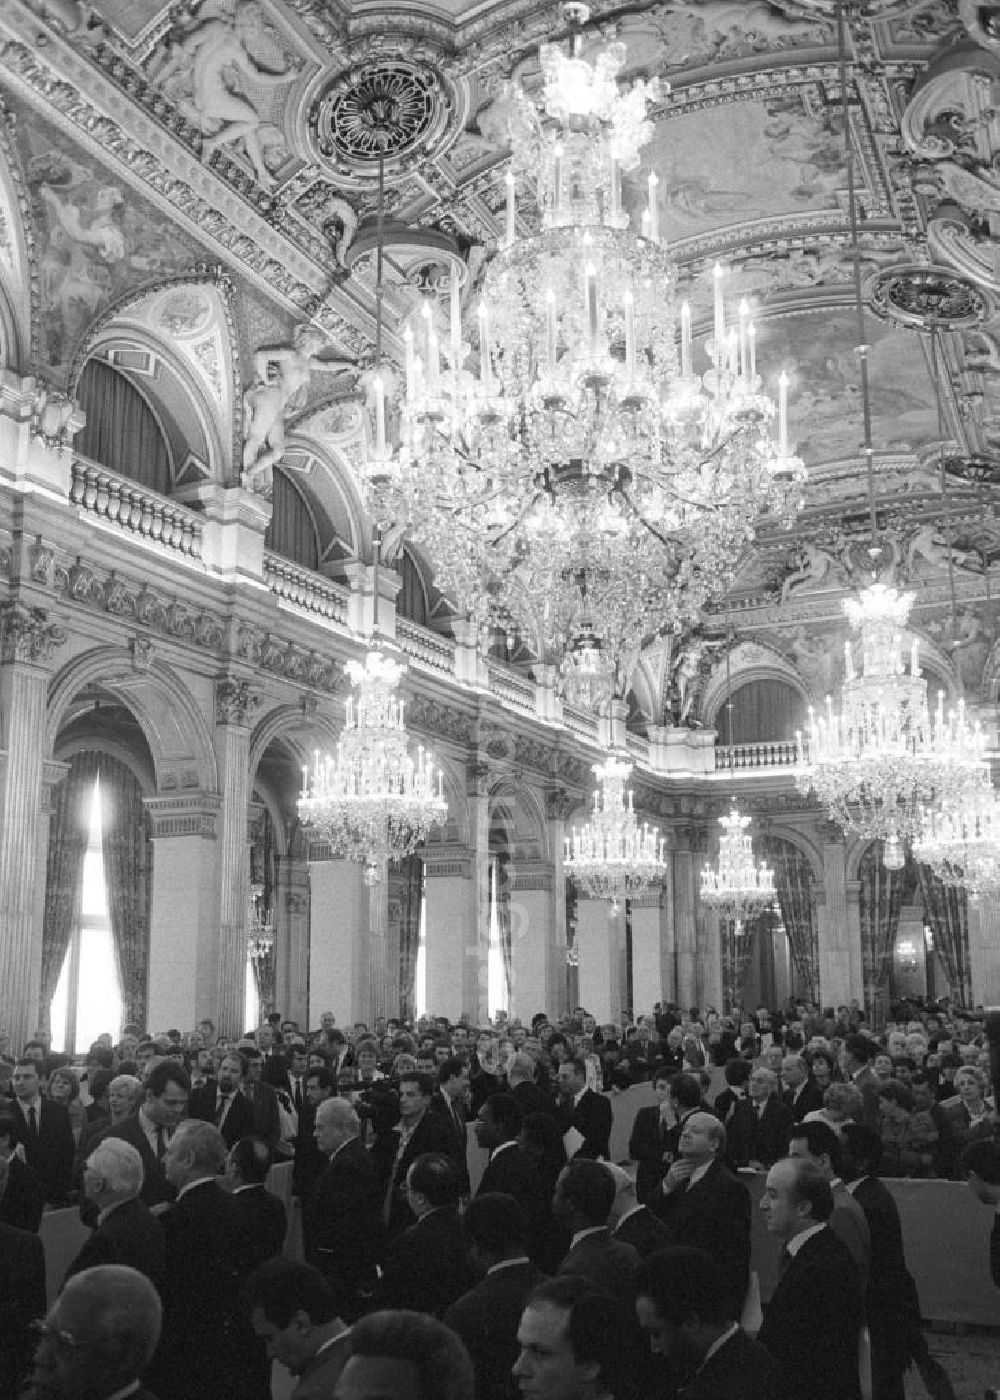 GDR photo archive: Paris - Gäste beim Empfang von Erich Honecker, Vorsitzender des Staatsrates DDR, im Saal im Rathaus in Paris. Blick in den Saal mit ausladenden Kronleuchtern.